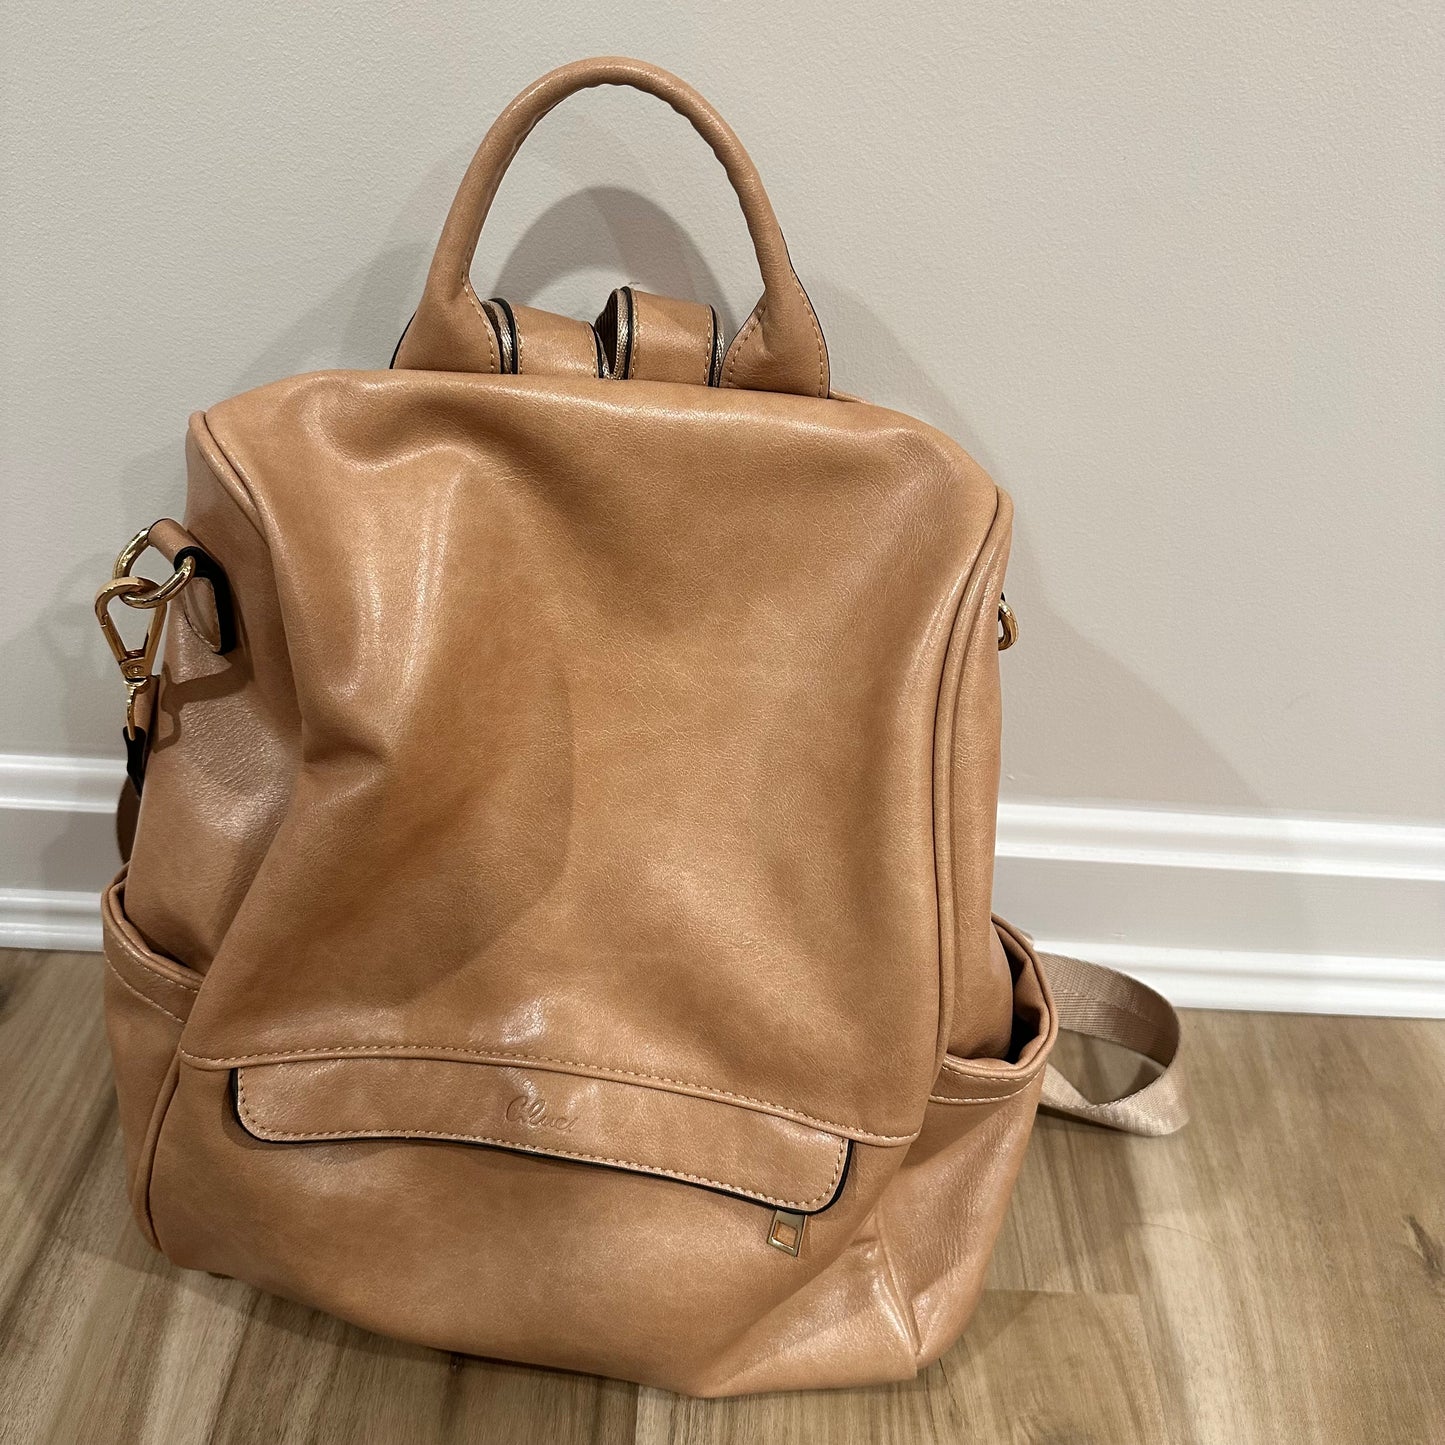 Light Camel color |  Backpack purse